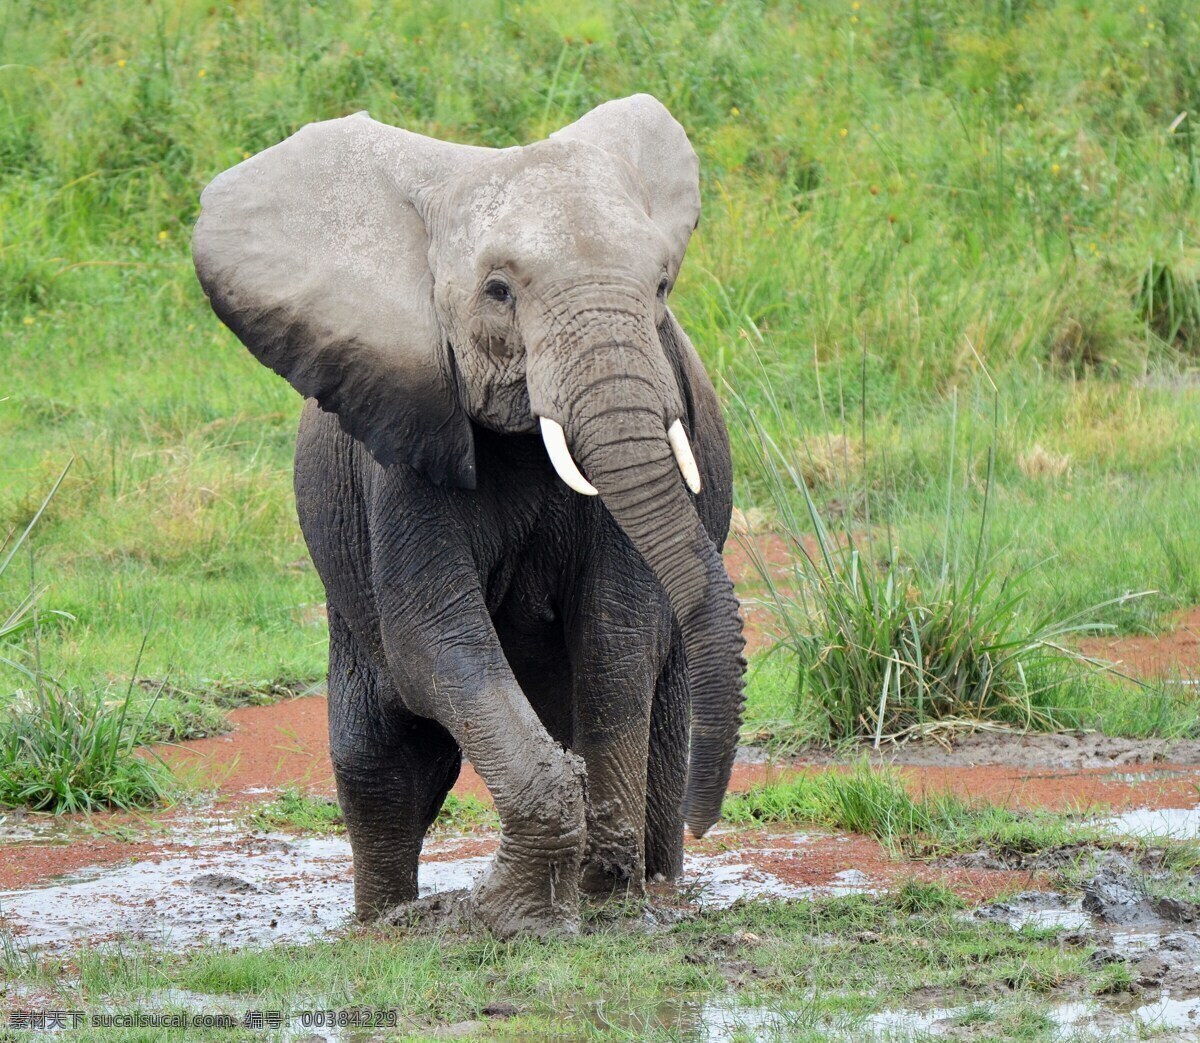 泥地野生大象 大象 非洲象 非洲大象 野生大象 野生动物 哺乳动物 保护动物 珍惜动物 动物 生物世界